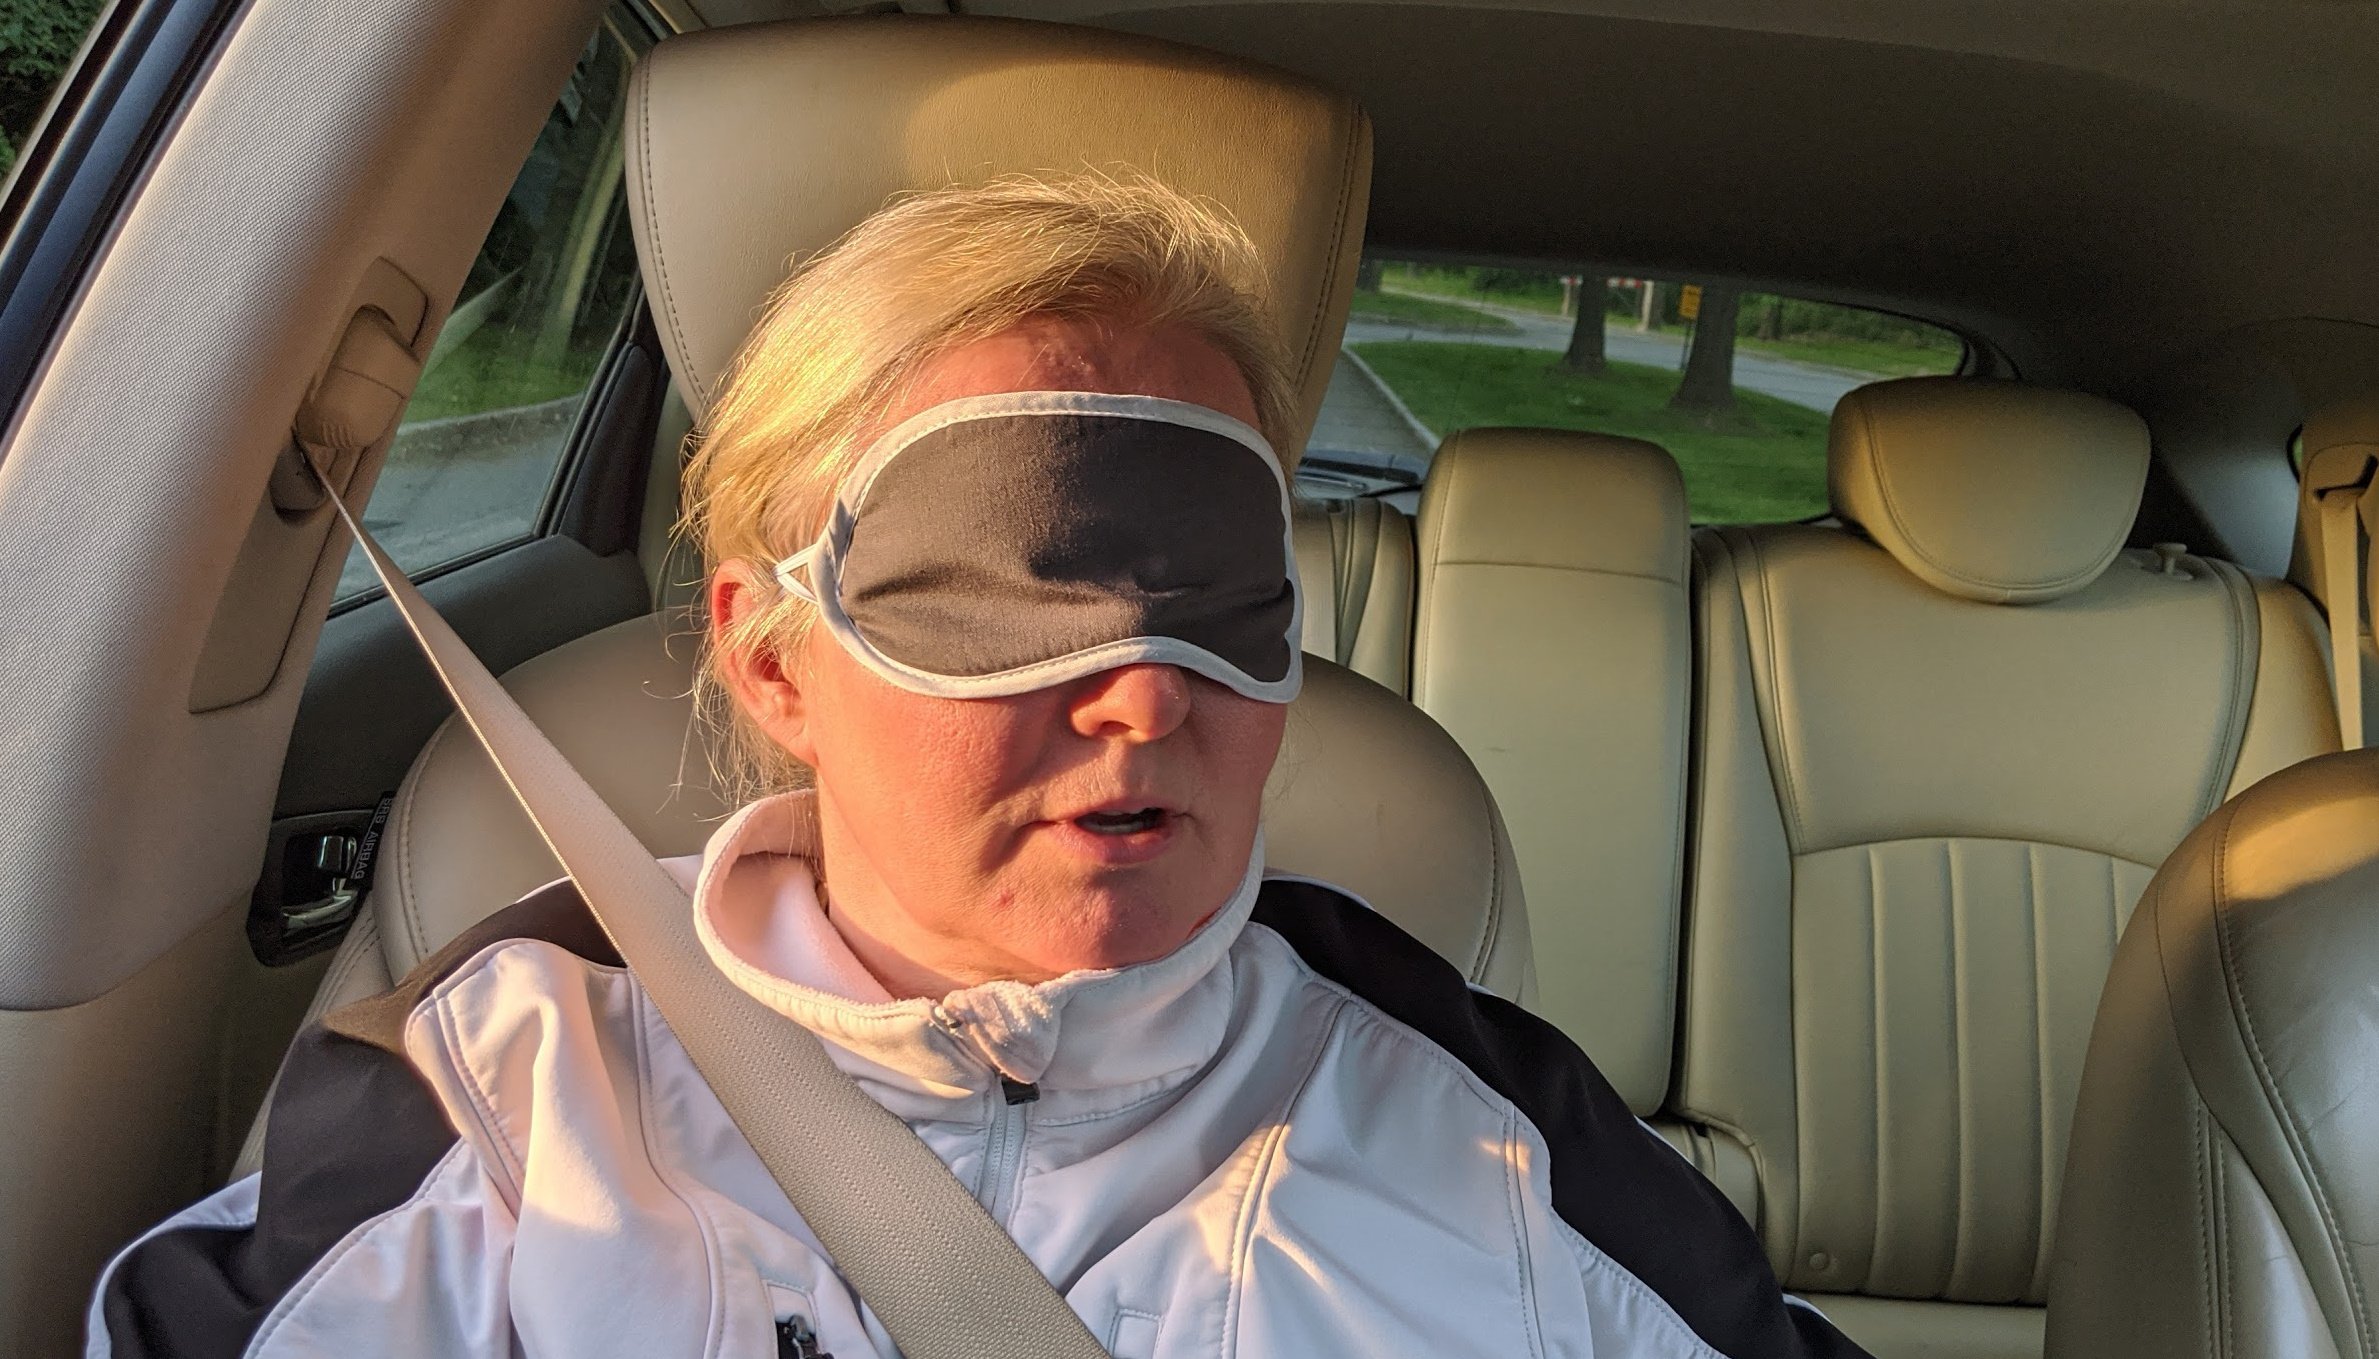 Does A Blindfolded Passenger Make You A Safer Driver